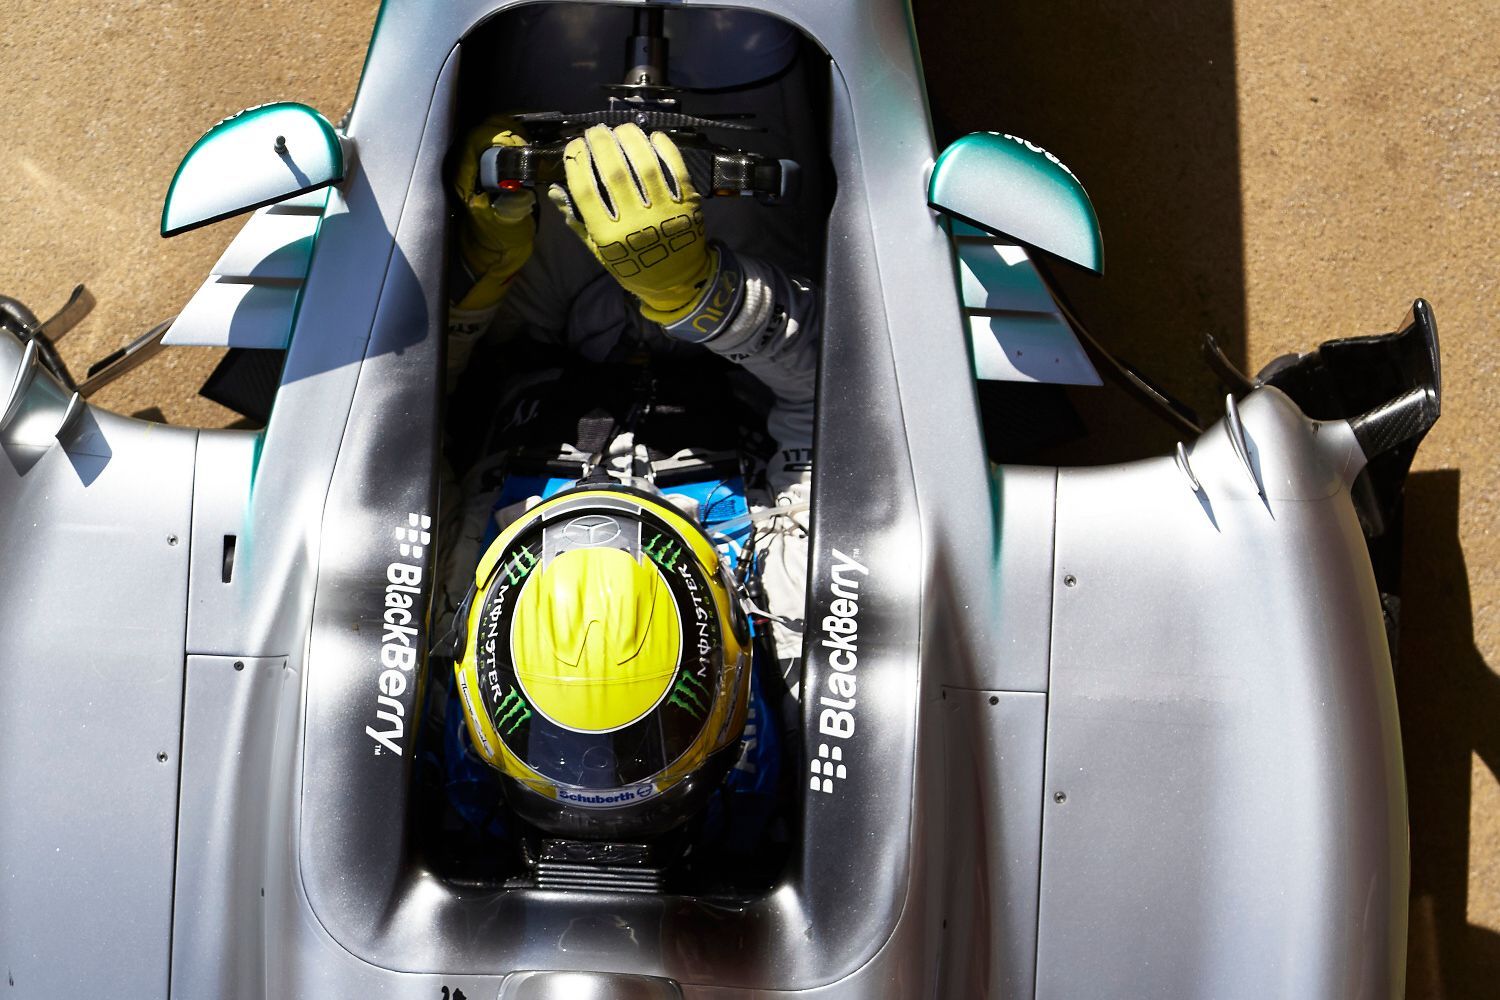 Nico Rosberg, Mercedes